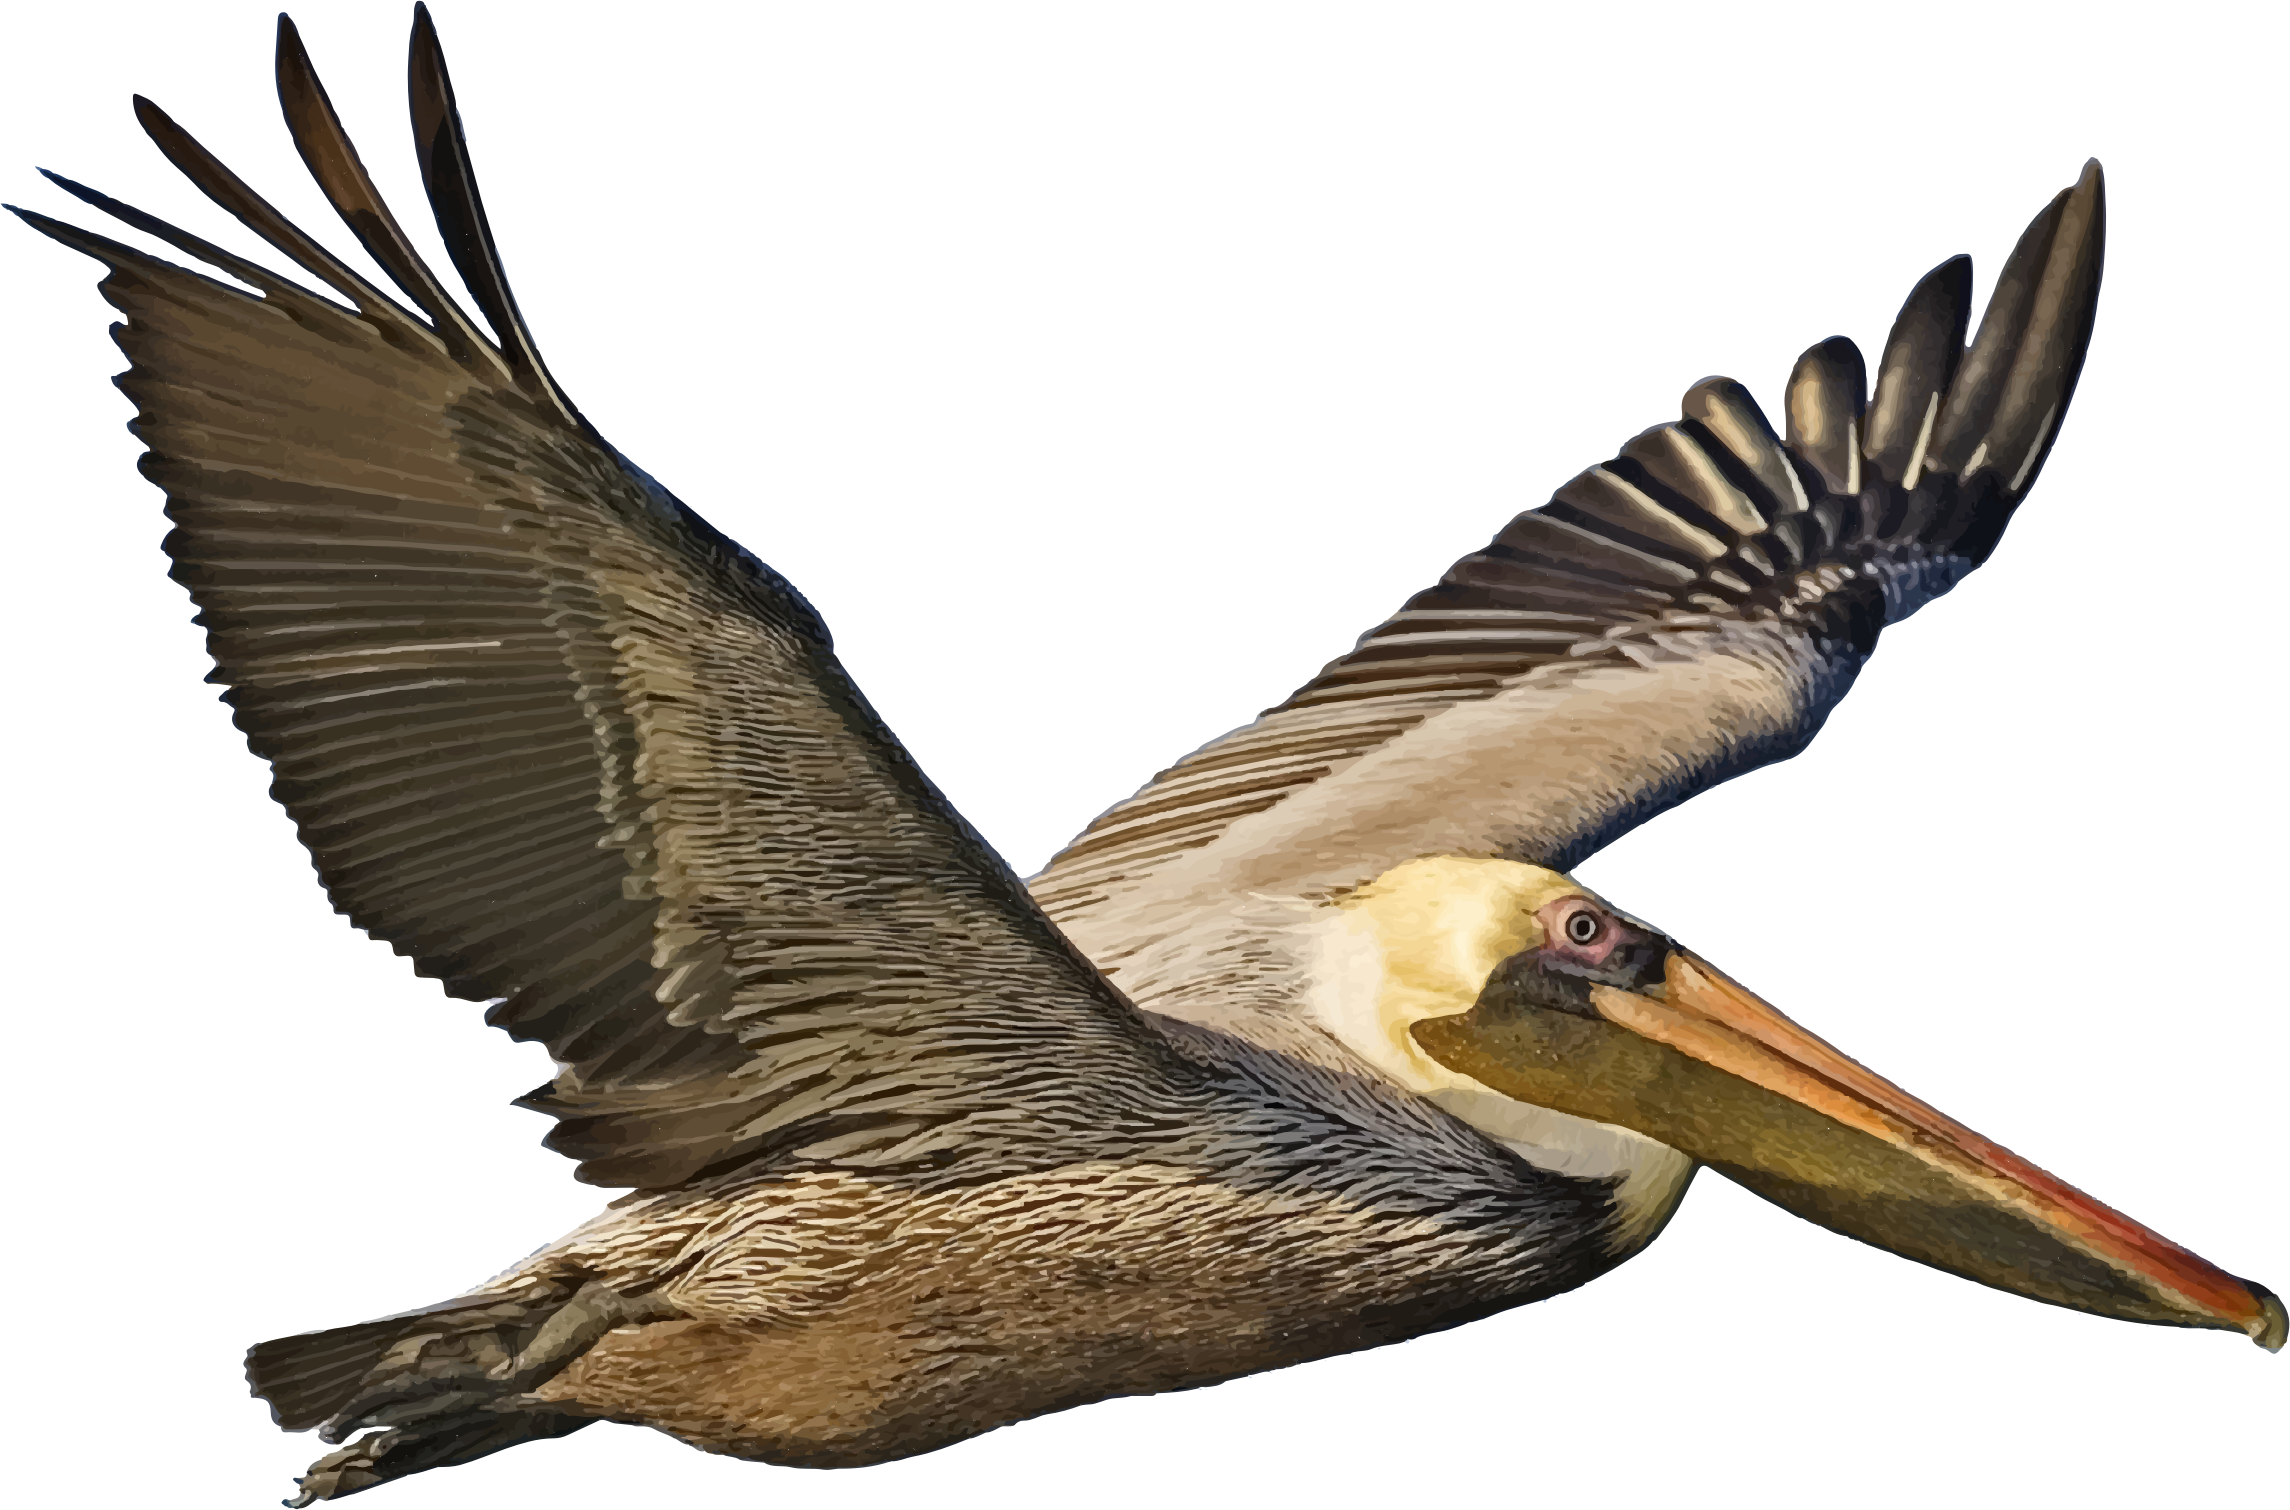 Pelican In Flight - Brown Pelican In Flight (2290x1510)